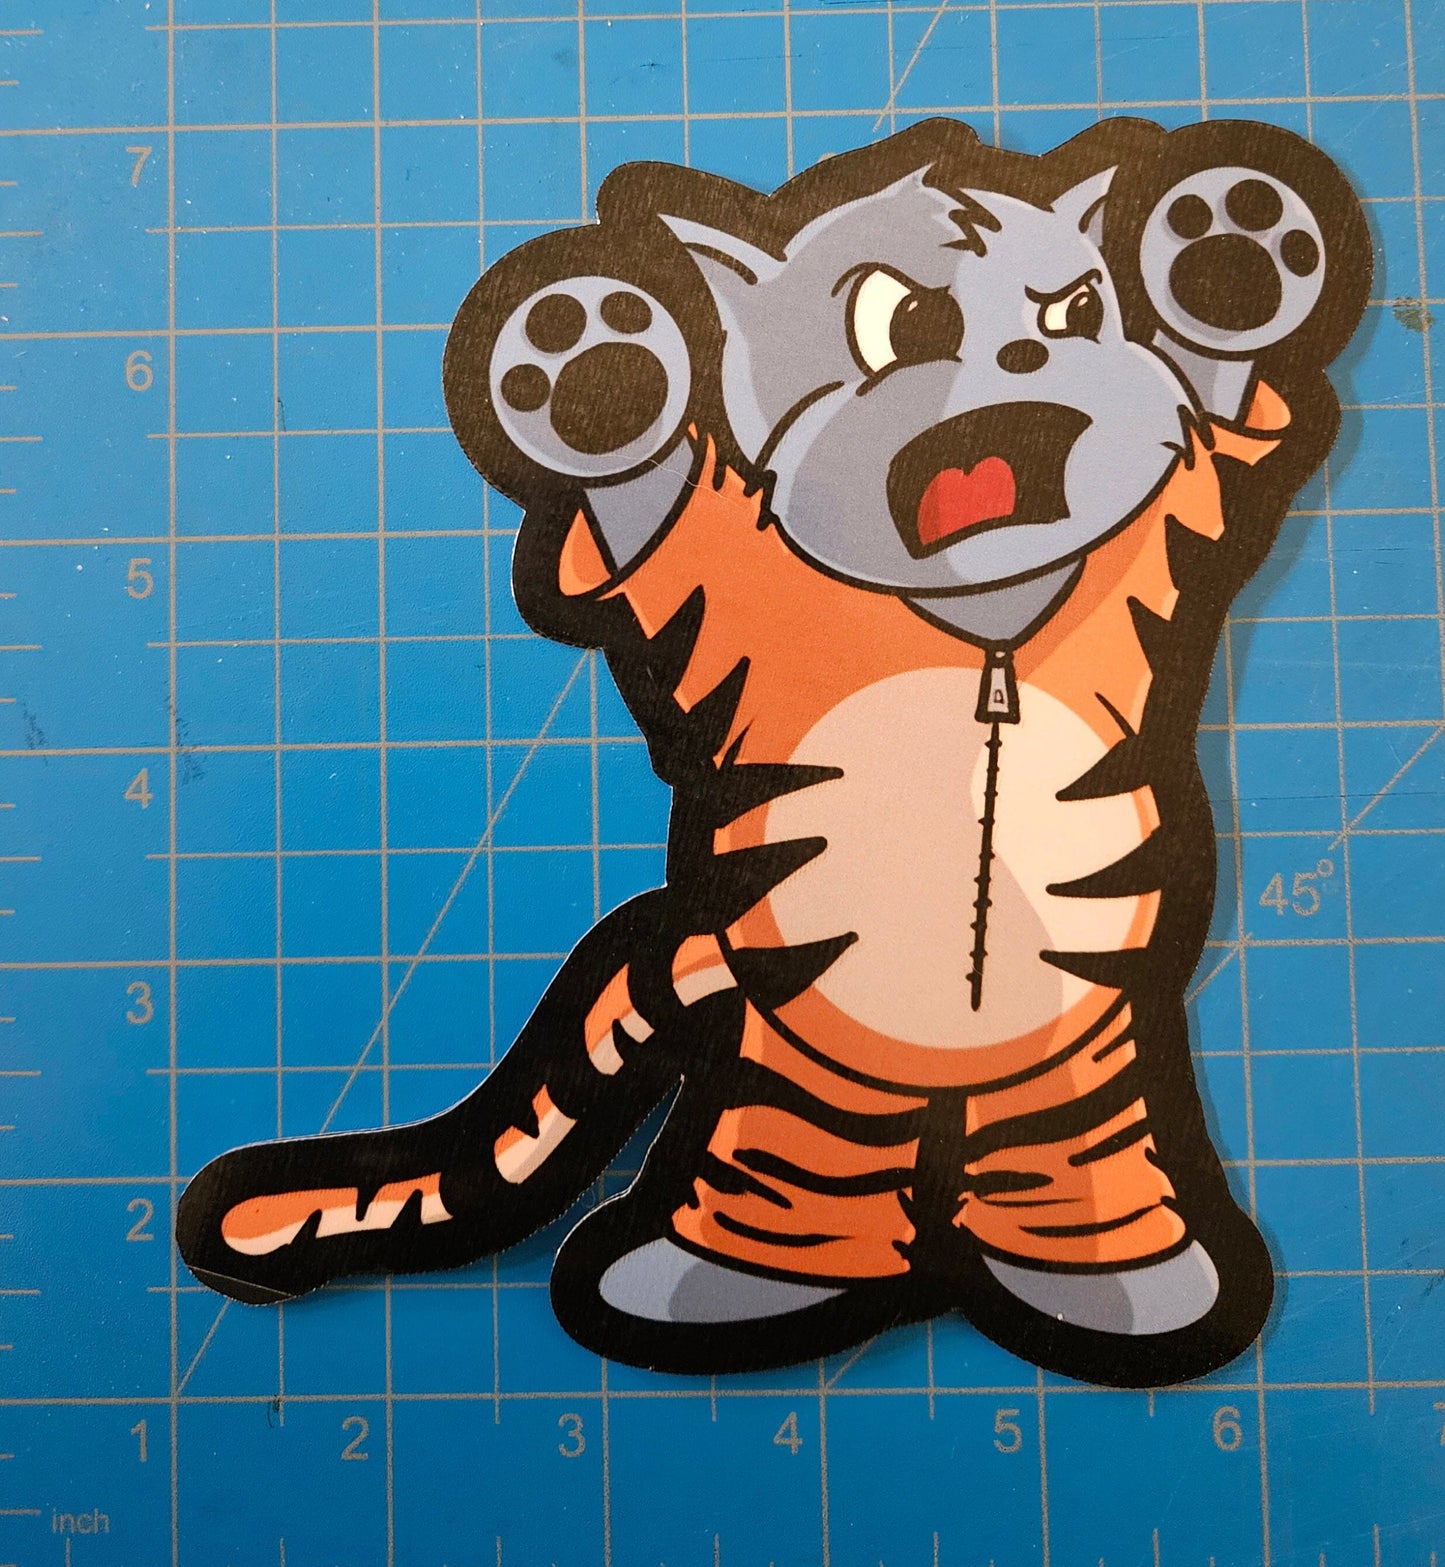 JUMBO Kitten in a Tiger Onesie sticker sticker DangerBearIndustries 